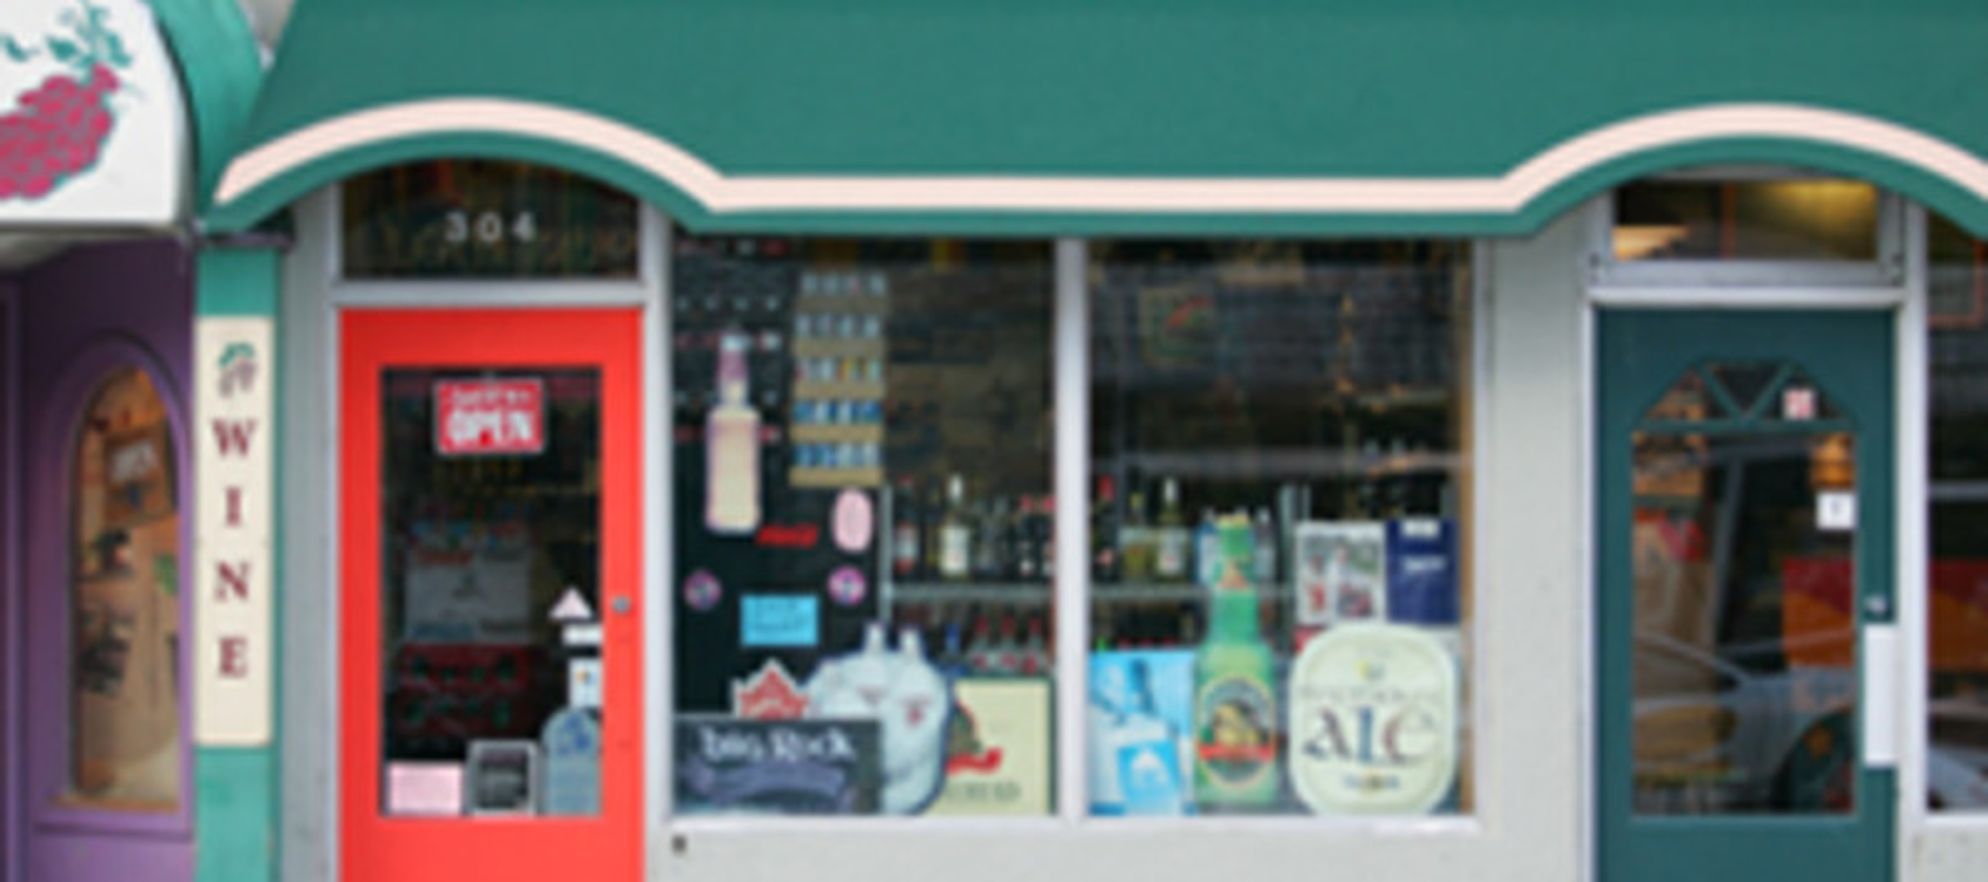 A Liquor Store